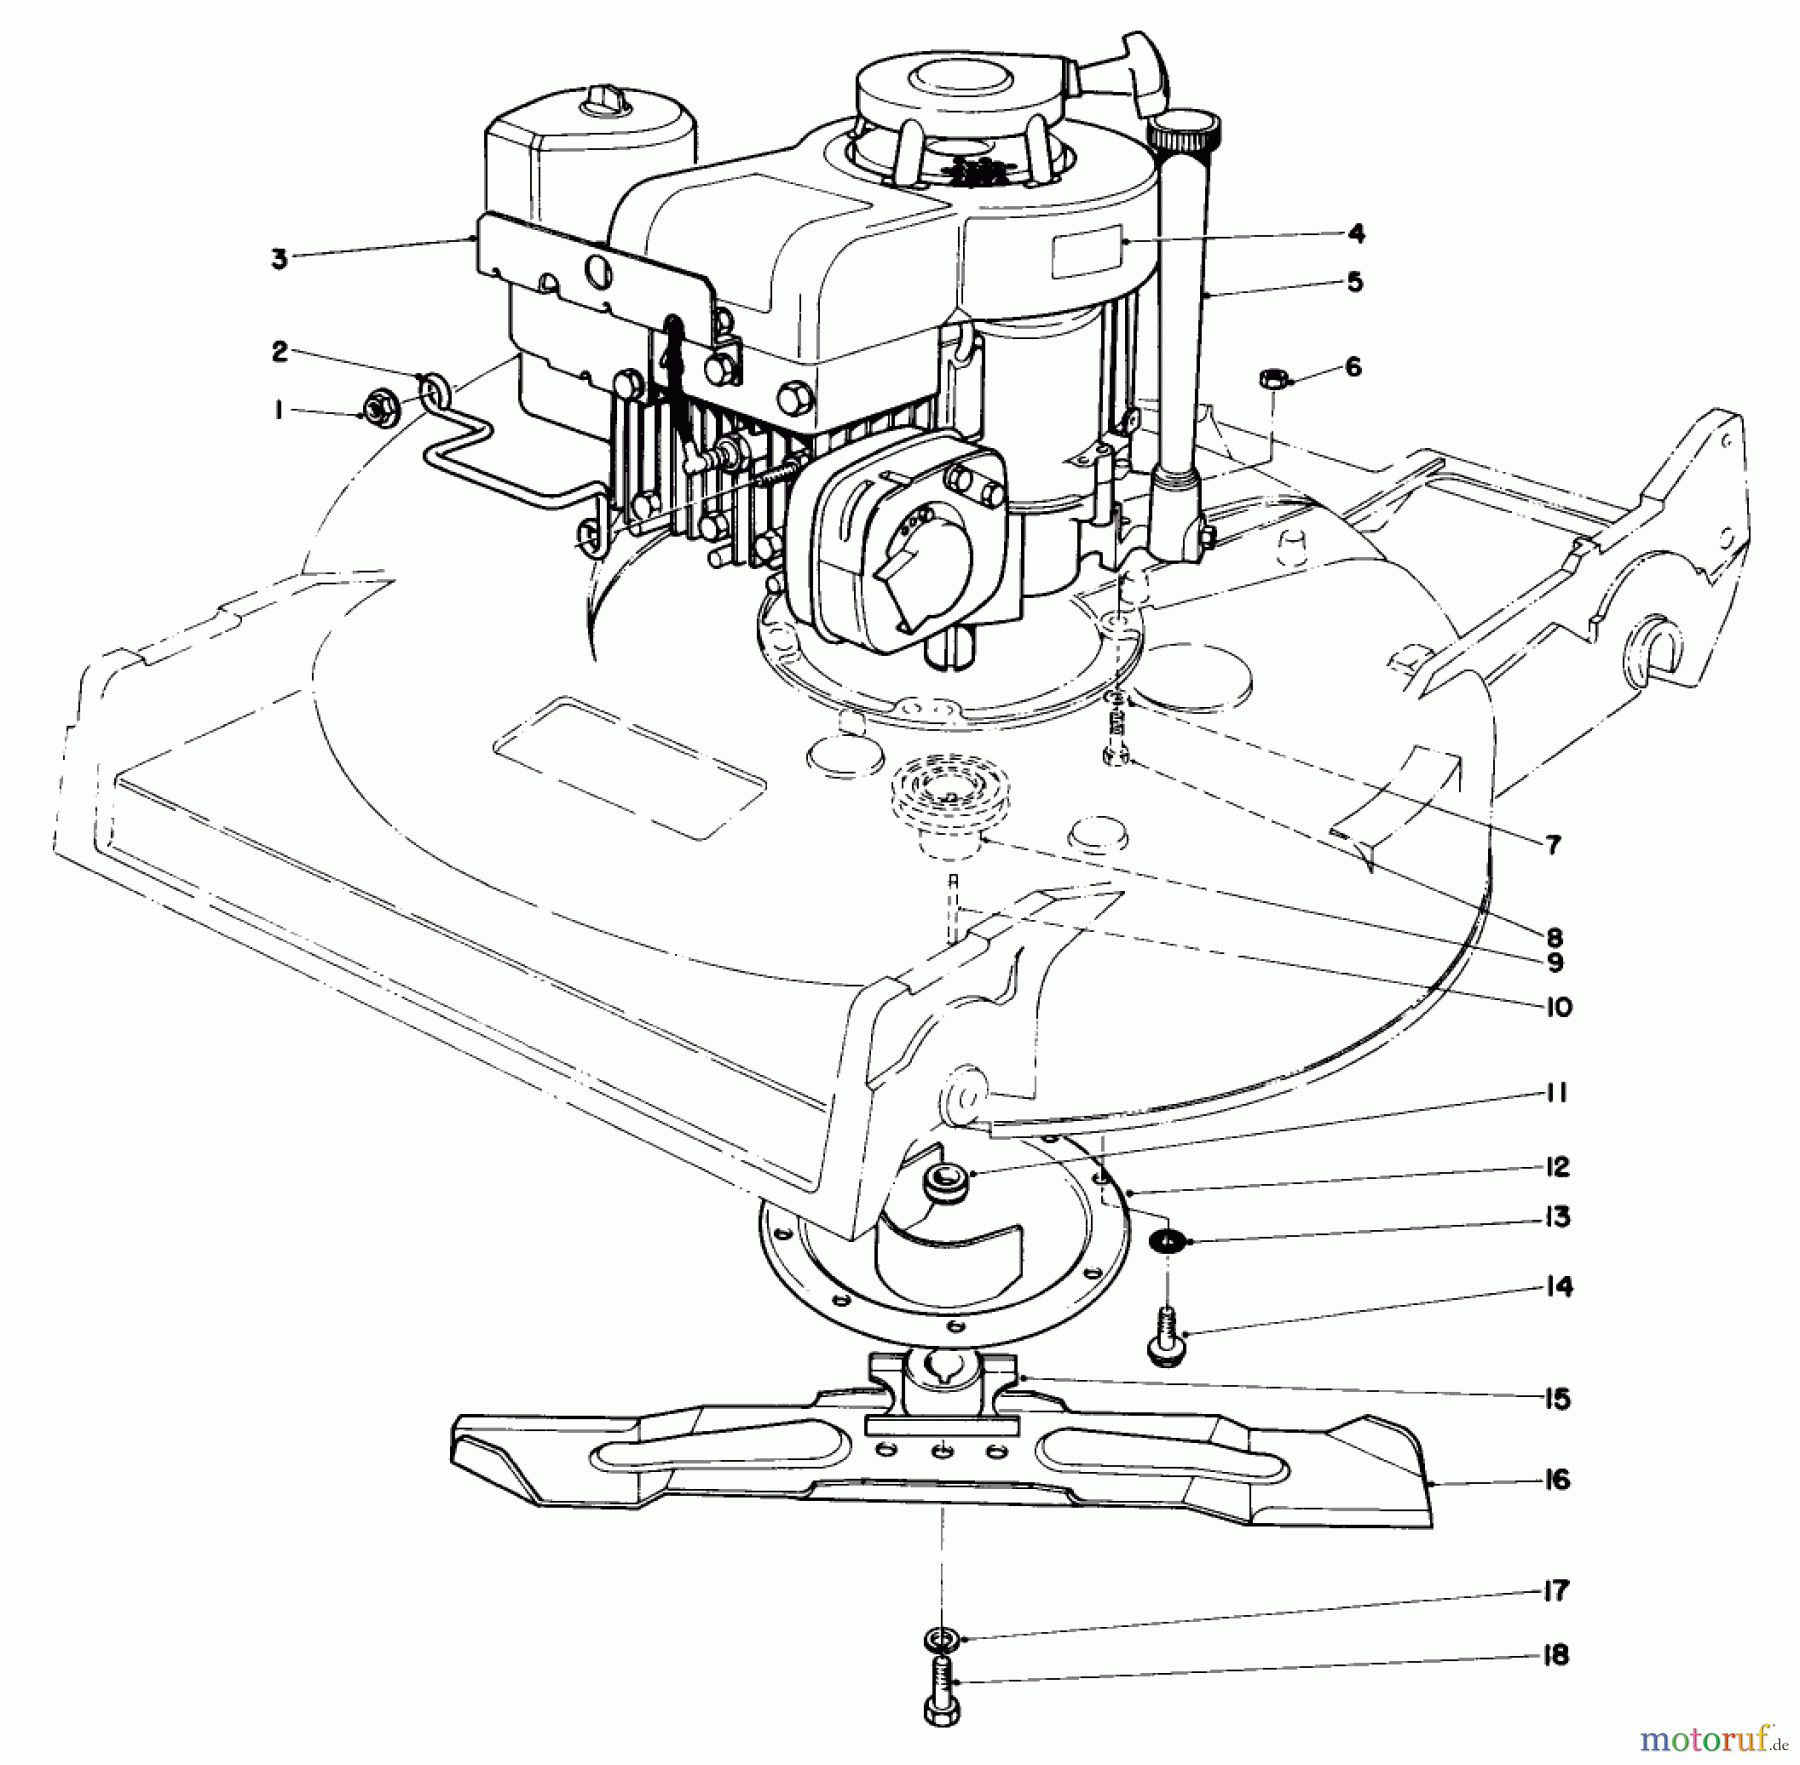  Toro Neu Mowers, Walk-Behind Seite 2 22020 - Toro Lawnmower, 1985 (5000001-5999999) ENGINE ASSEMBLY (MODEL 22020)